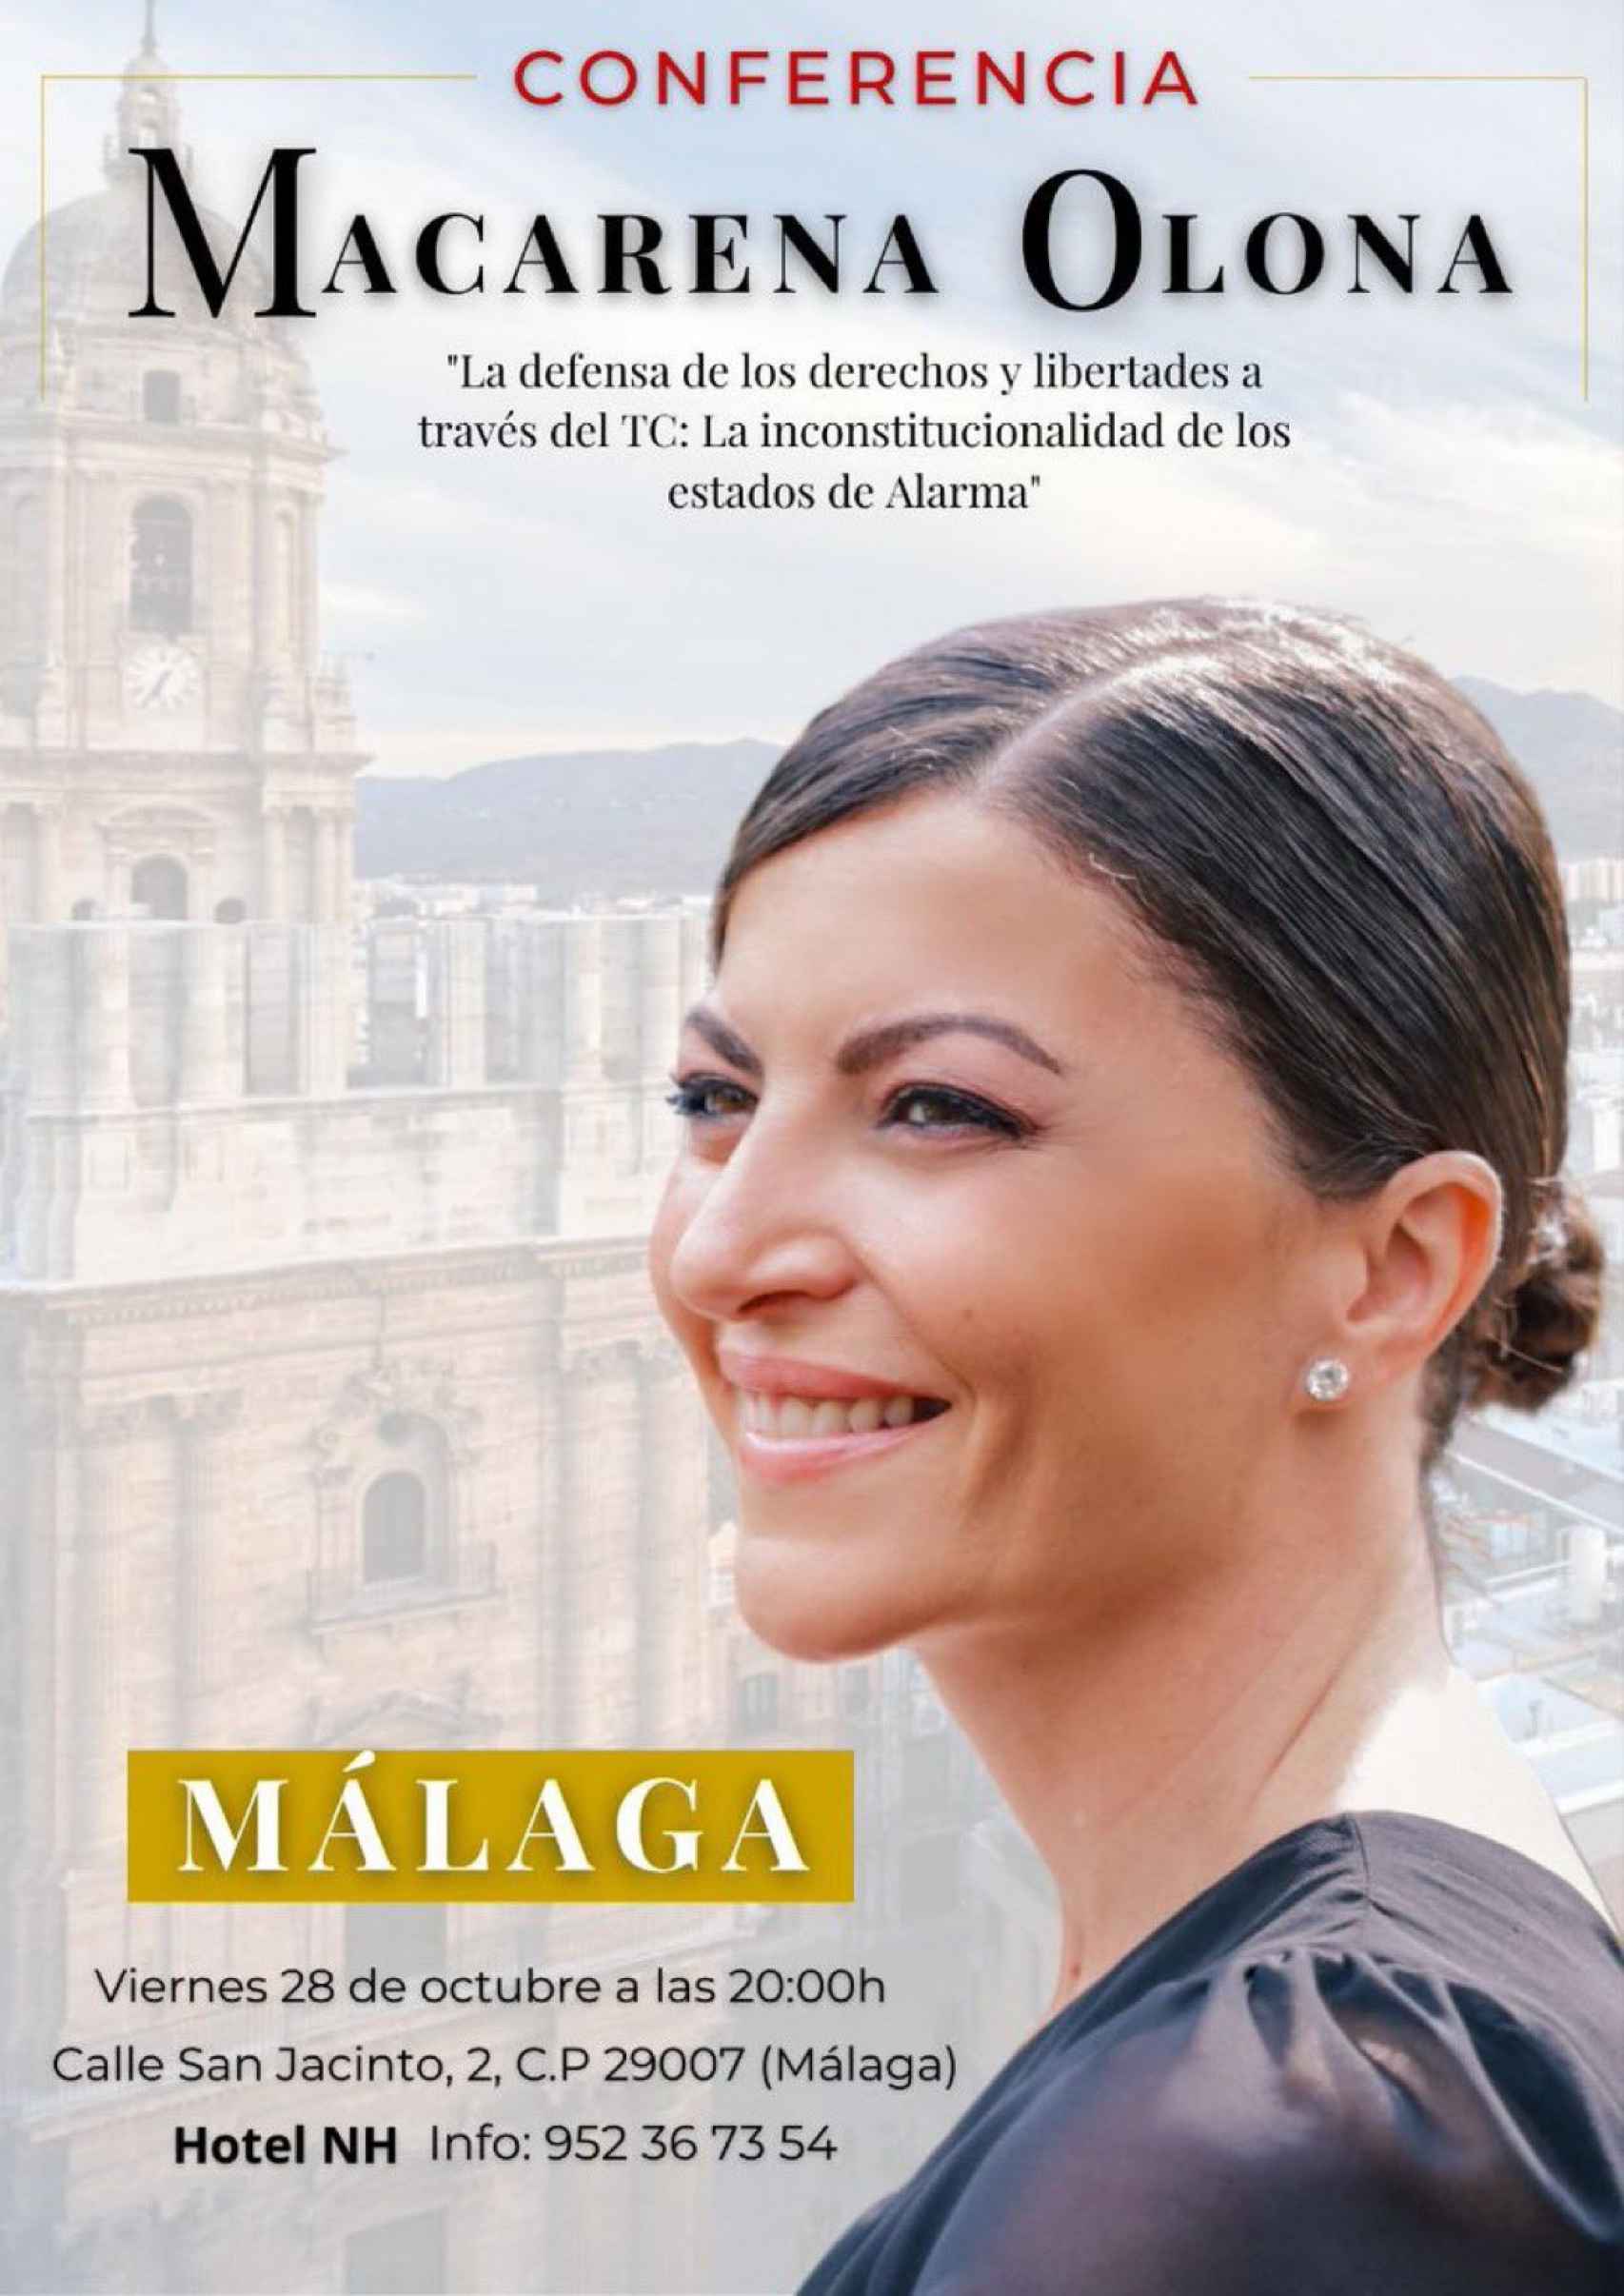 Convocatoria del acto de Olona en Málaga.